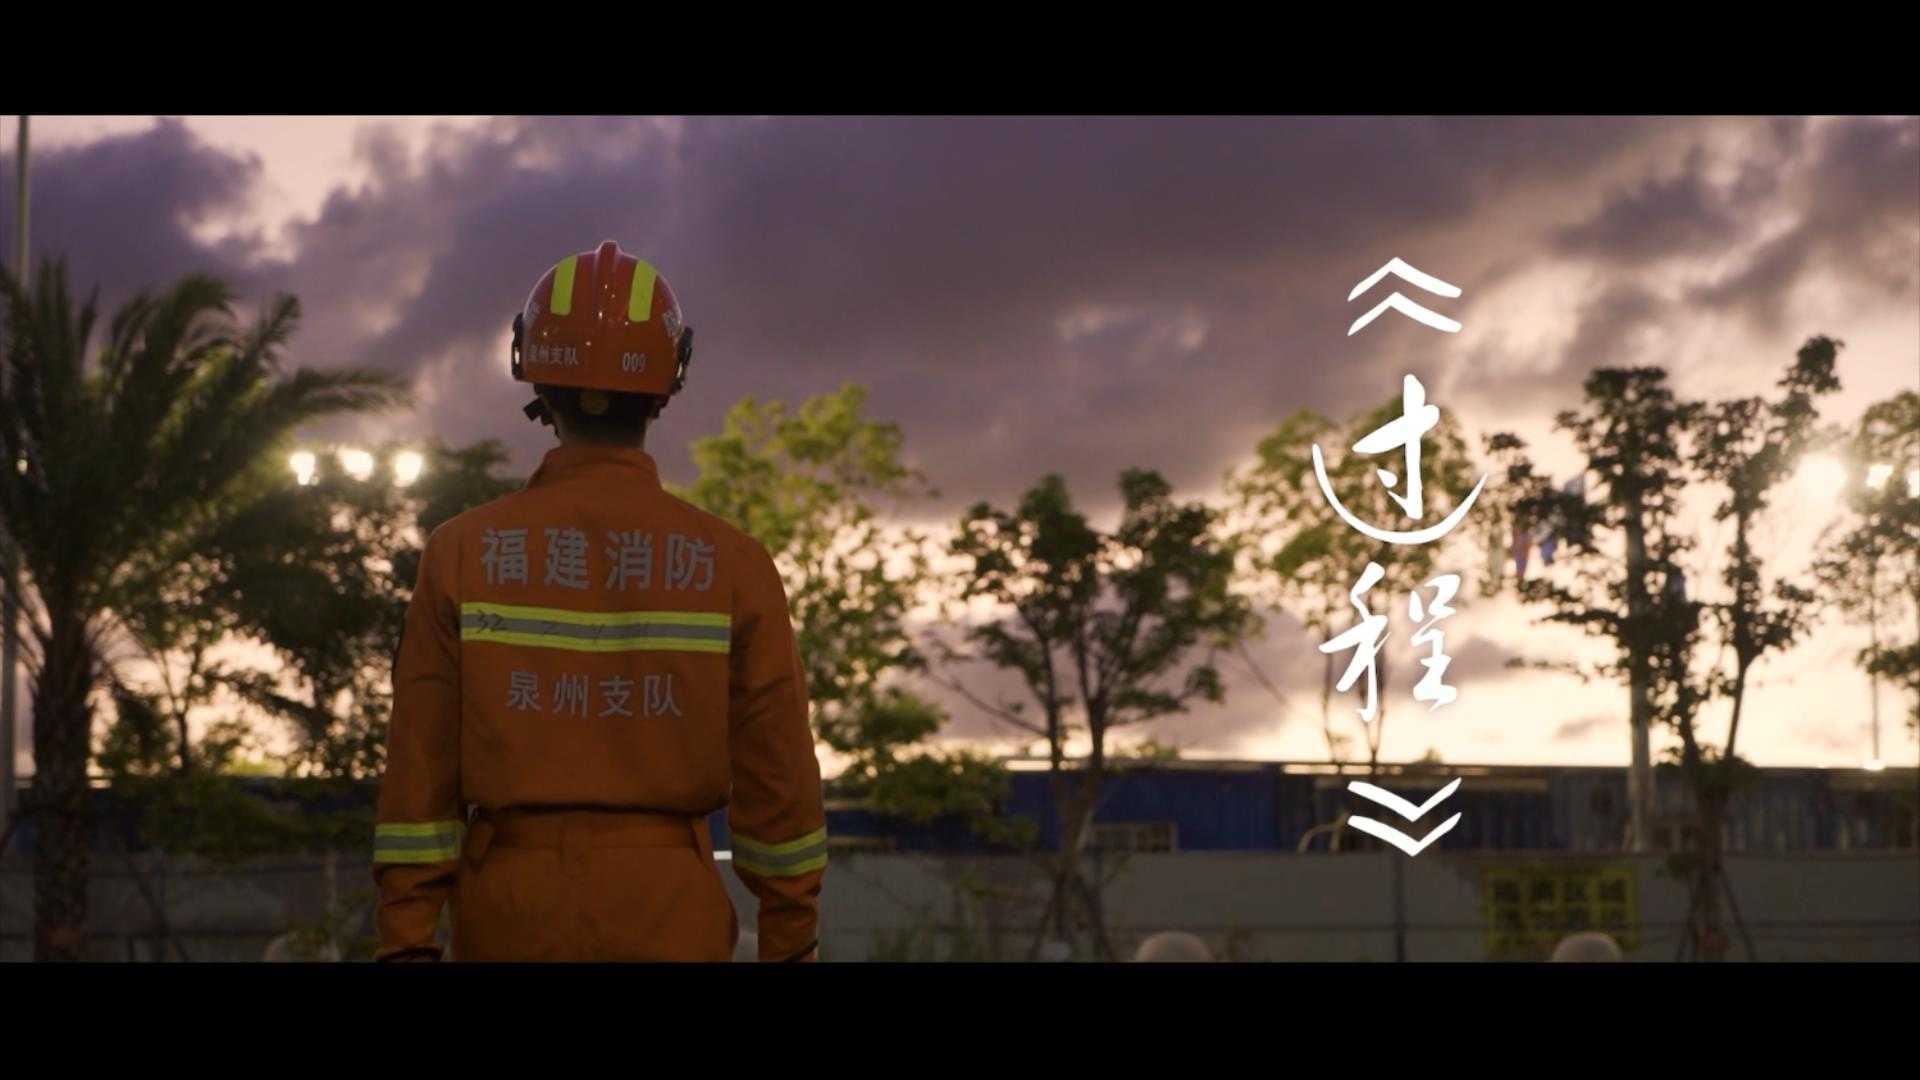 消防员形象宣传片《过程》